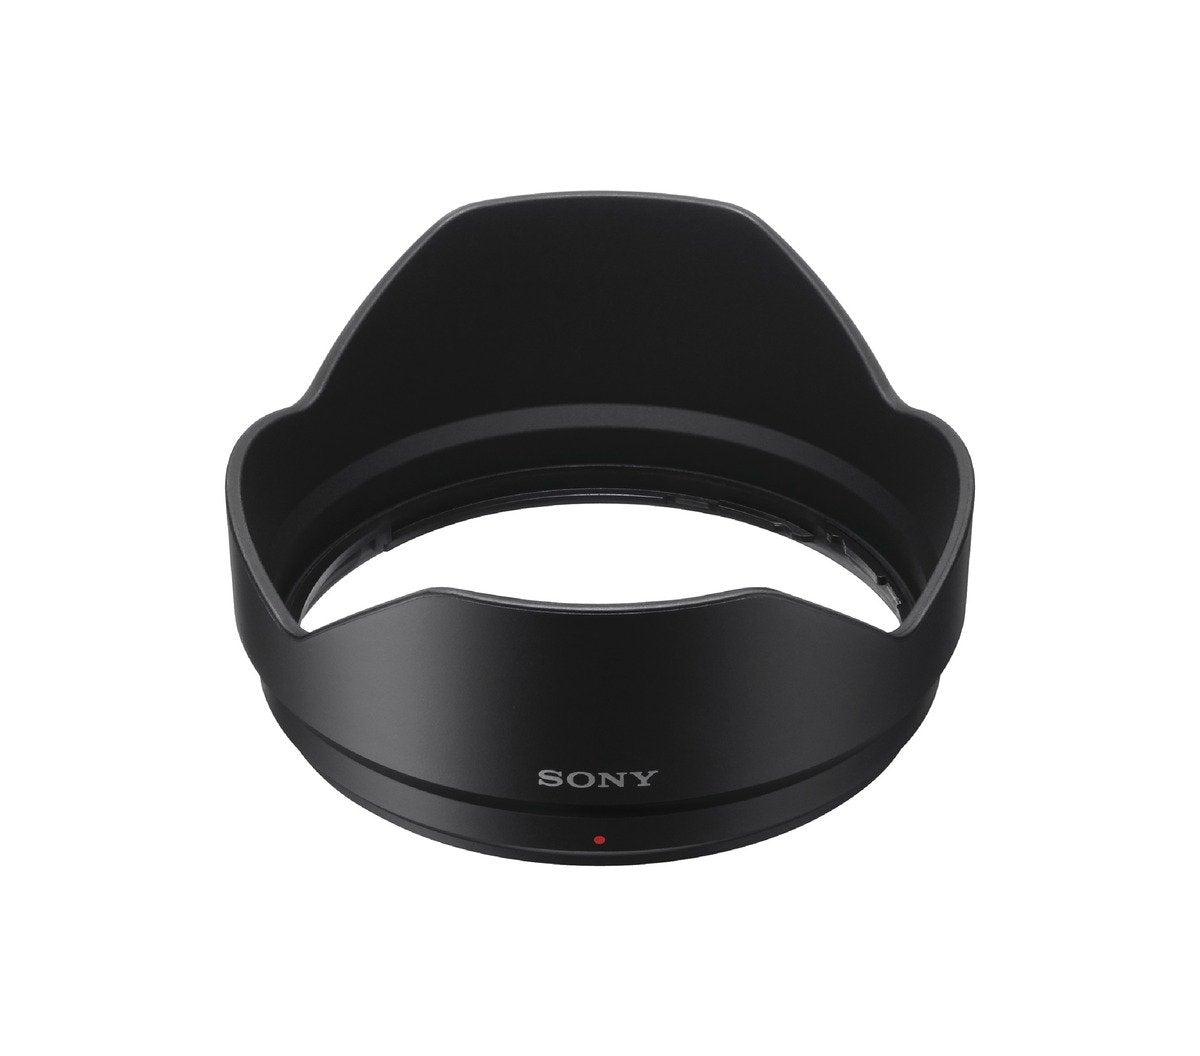 Sony Lens Hood for SEL1018 - Black - ALCSH123